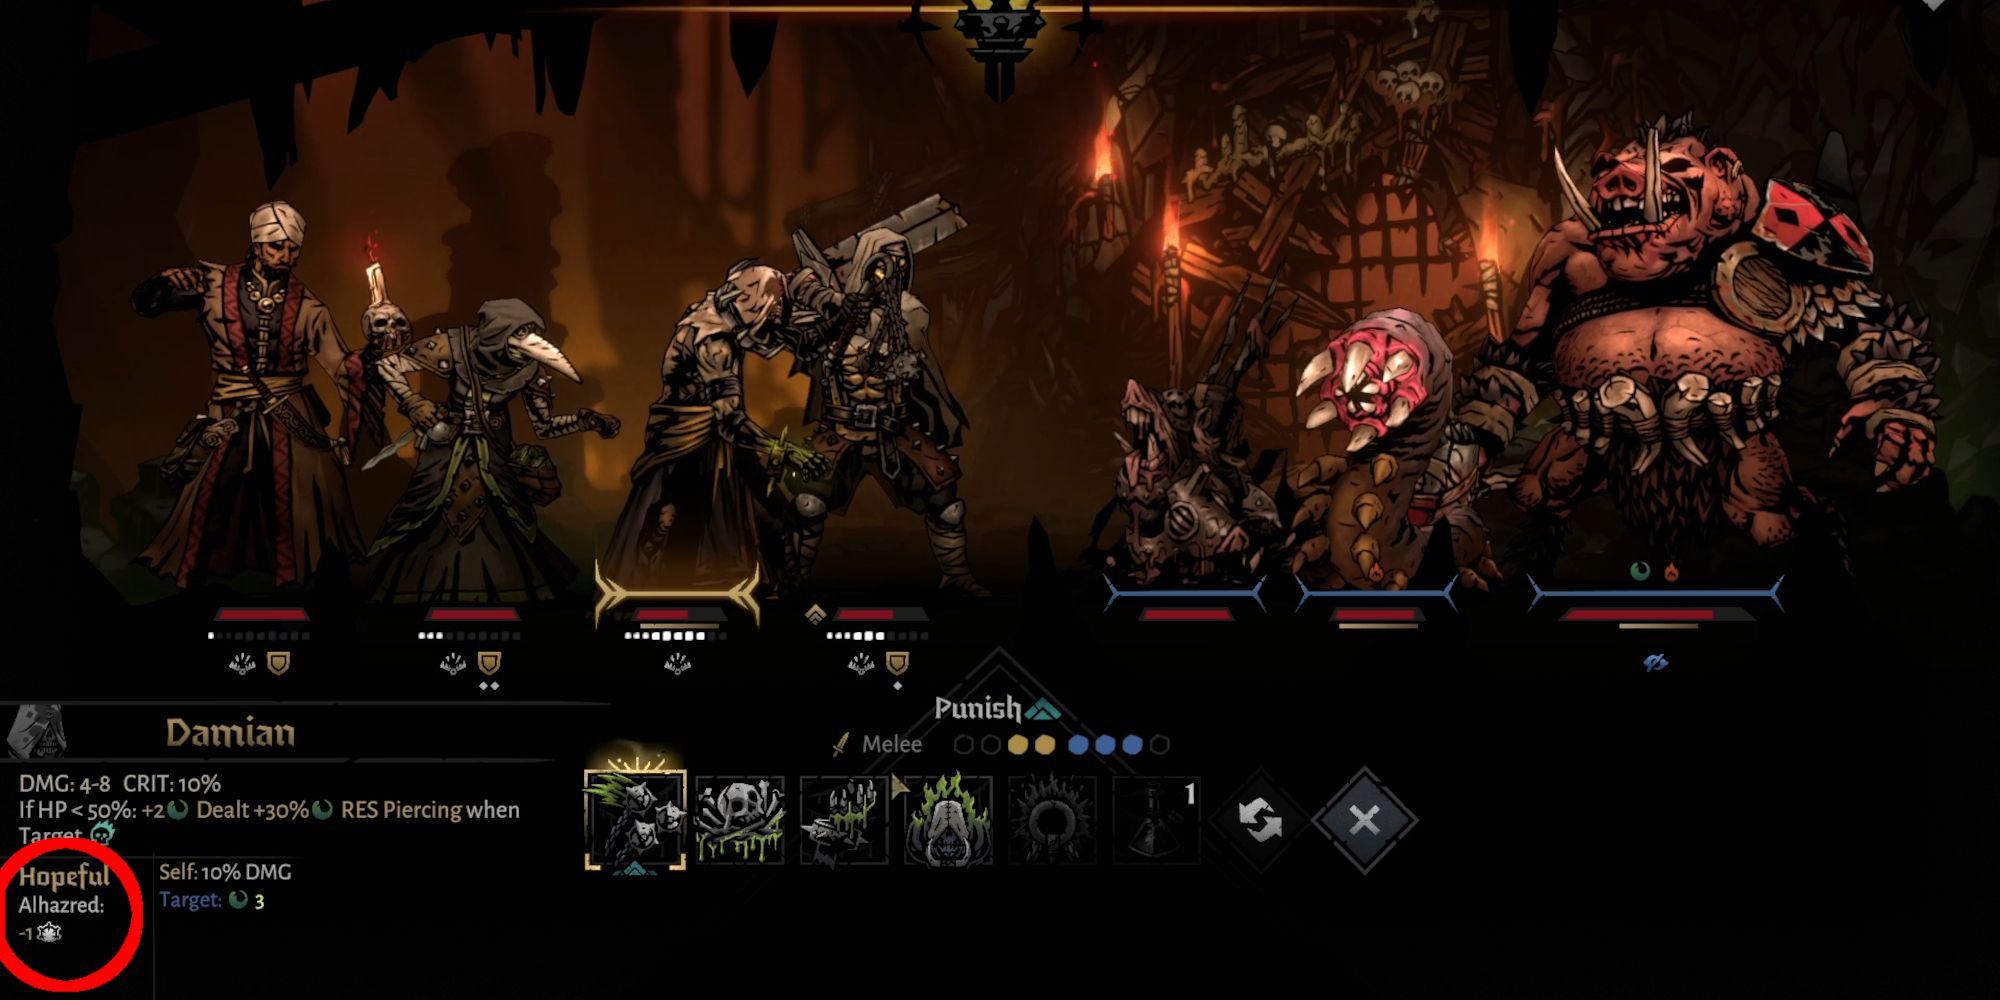 Blessed Skill shown in battle screenshot in Darkest Dungeon 2